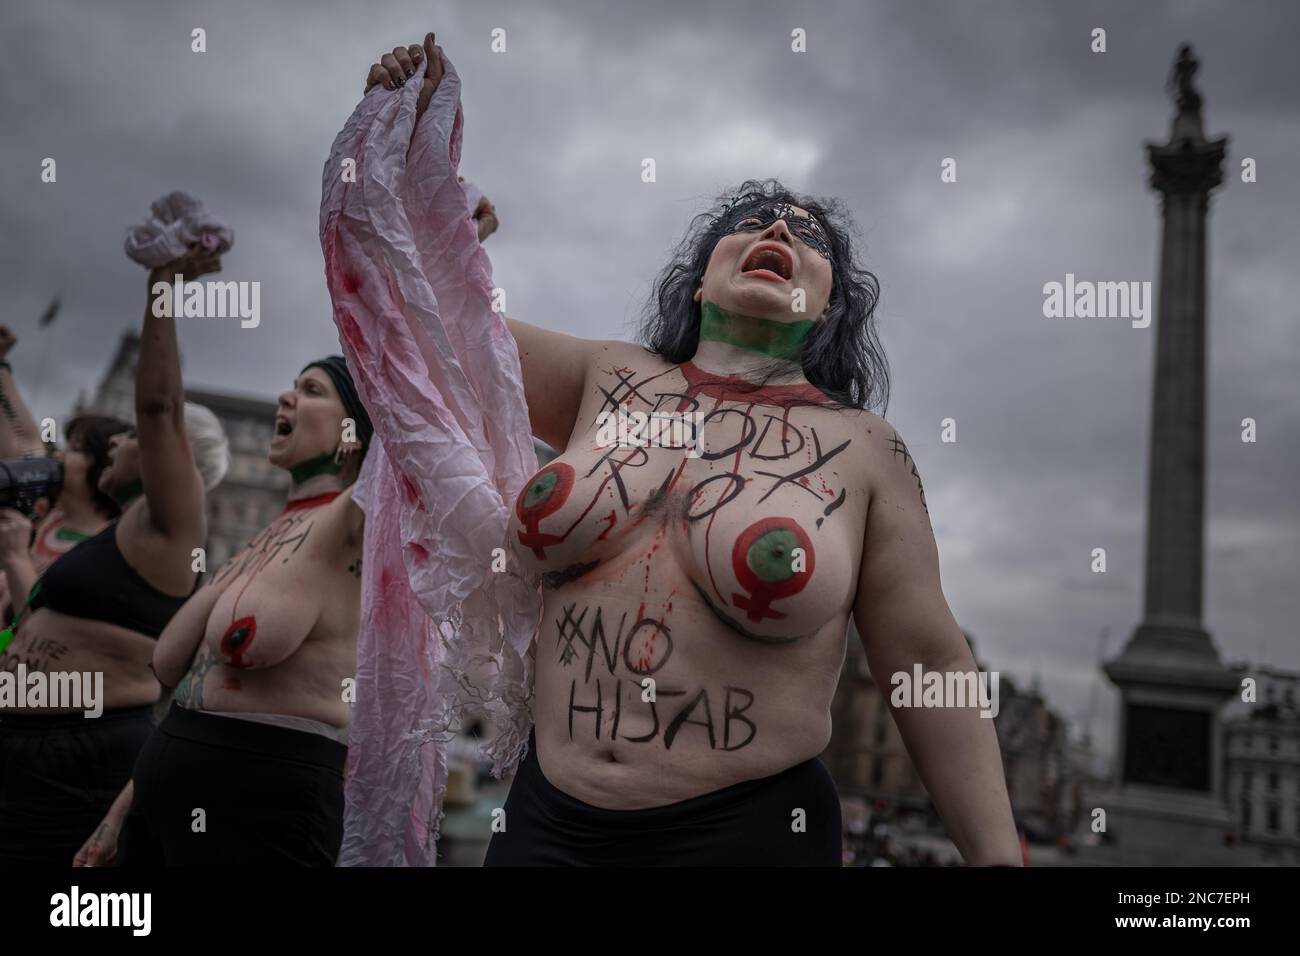 Britisch-iranische Frauen protestieren gegen den Welt-Hijab-Tag, indem sie an einem globalen "Körperaufstand"-Protest zur Verteidigung der anhaltenden Unterdrückung von Frauen im Iran teilnehmen. Stockfoto